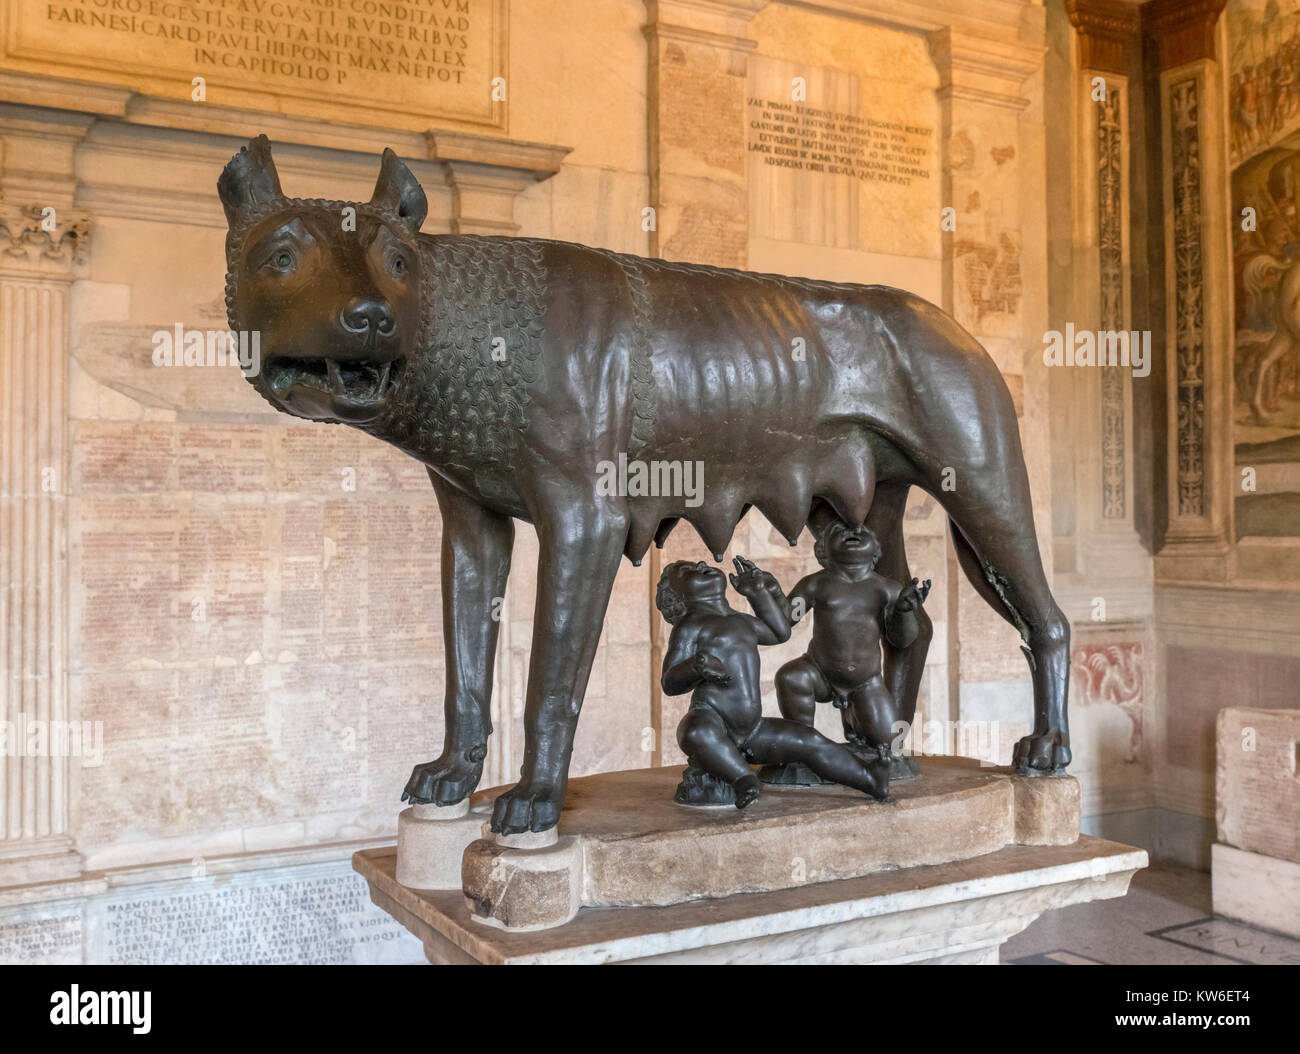 Le Musée Capitolin She-Wolf, une statue en bronze représentant un loup allaitant Romulus et Remus, Salle de la Wolf, conservateurs, Appartement Palazzo dei Conservatori, Musées du Capitole, Rome, Italie Banque D'Images